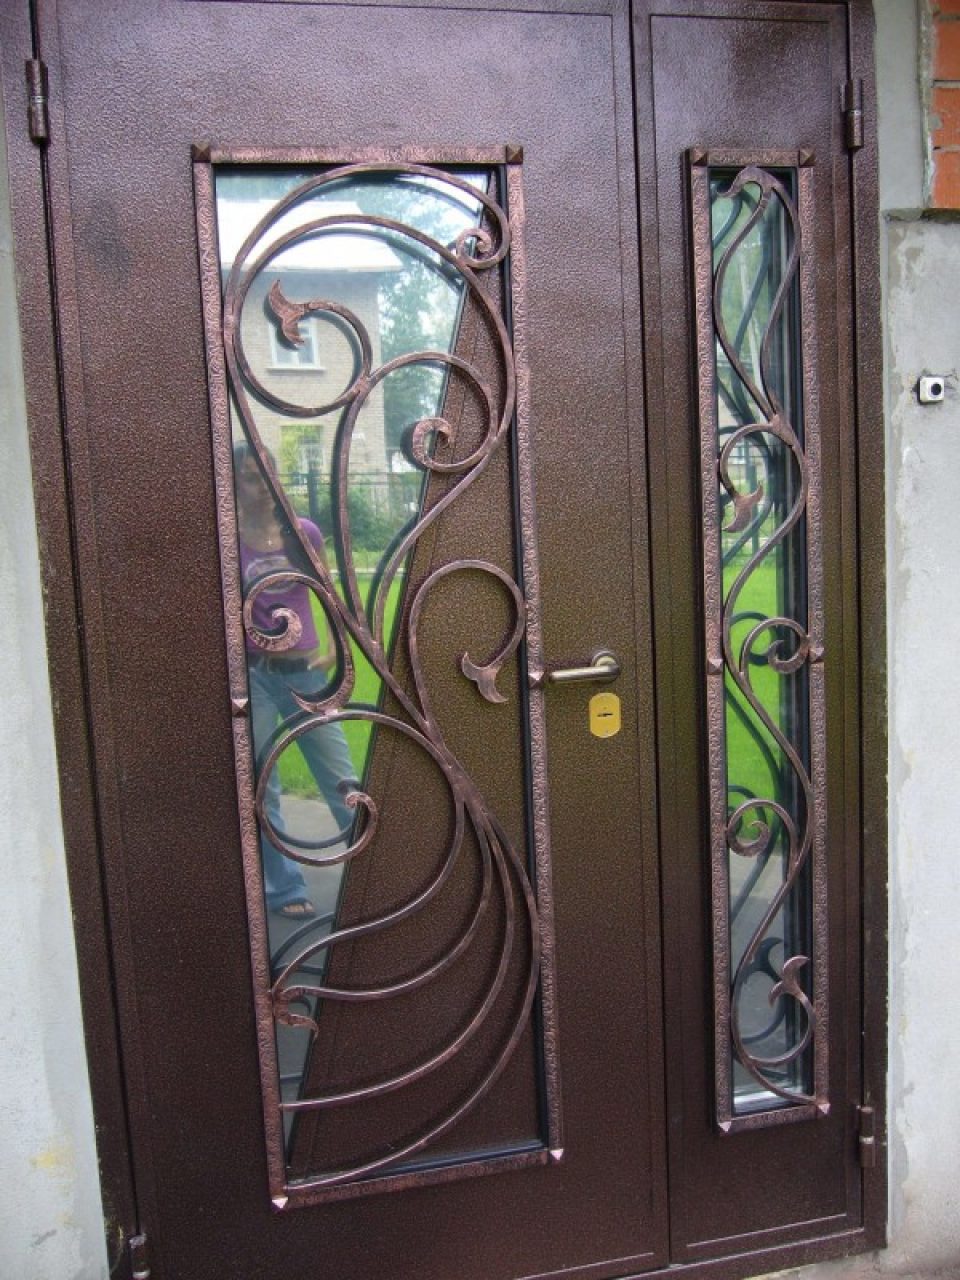 Железные входные двери со стеклом